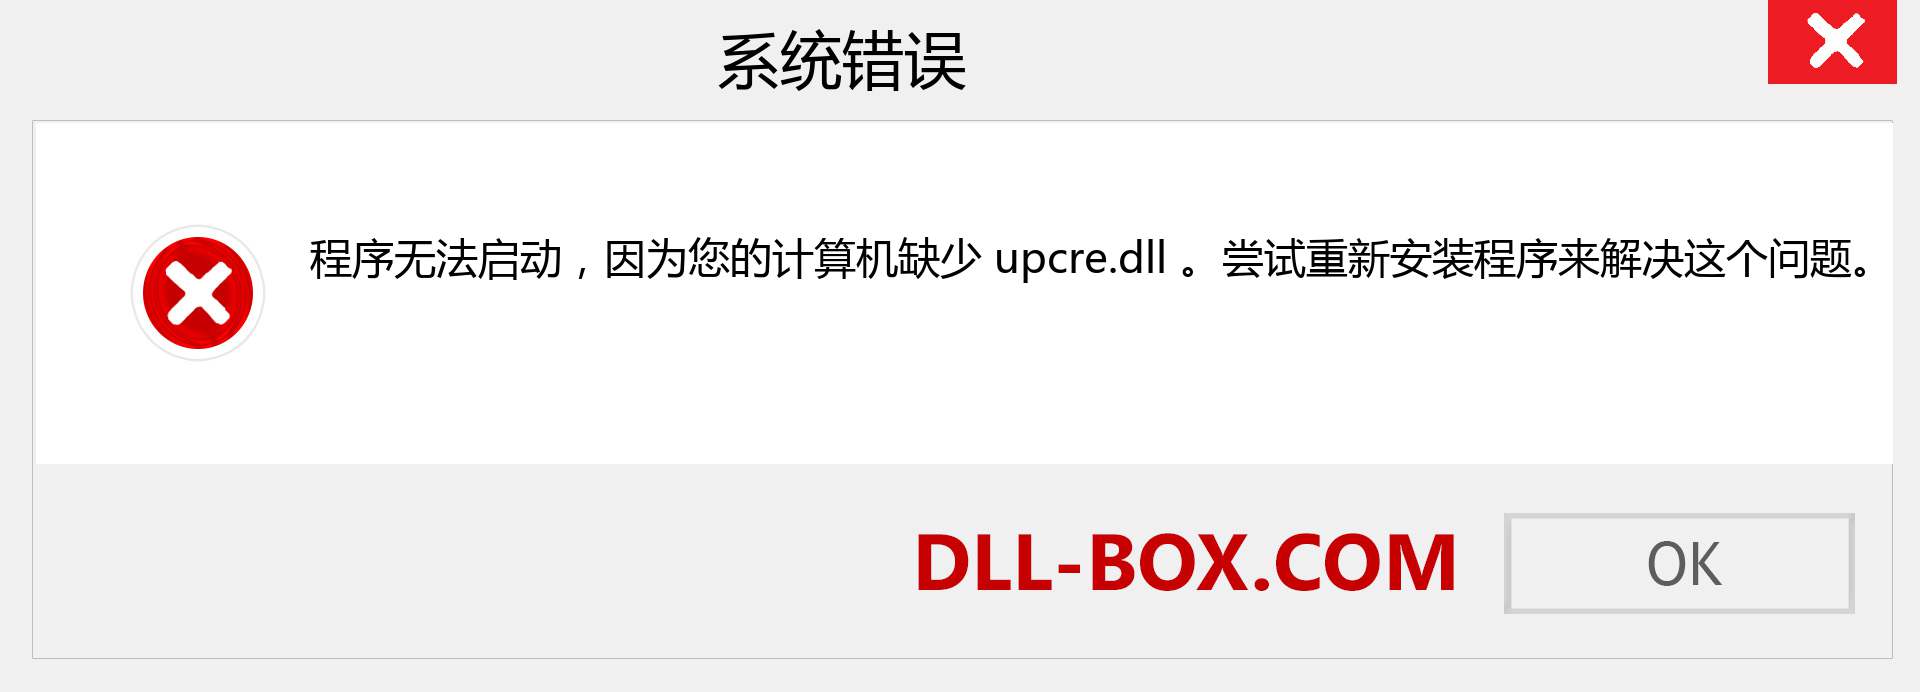 upcre.dll 文件丢失？。 适用于 Windows 7、8、10 的下载 - 修复 Windows、照片、图像上的 upcre dll 丢失错误